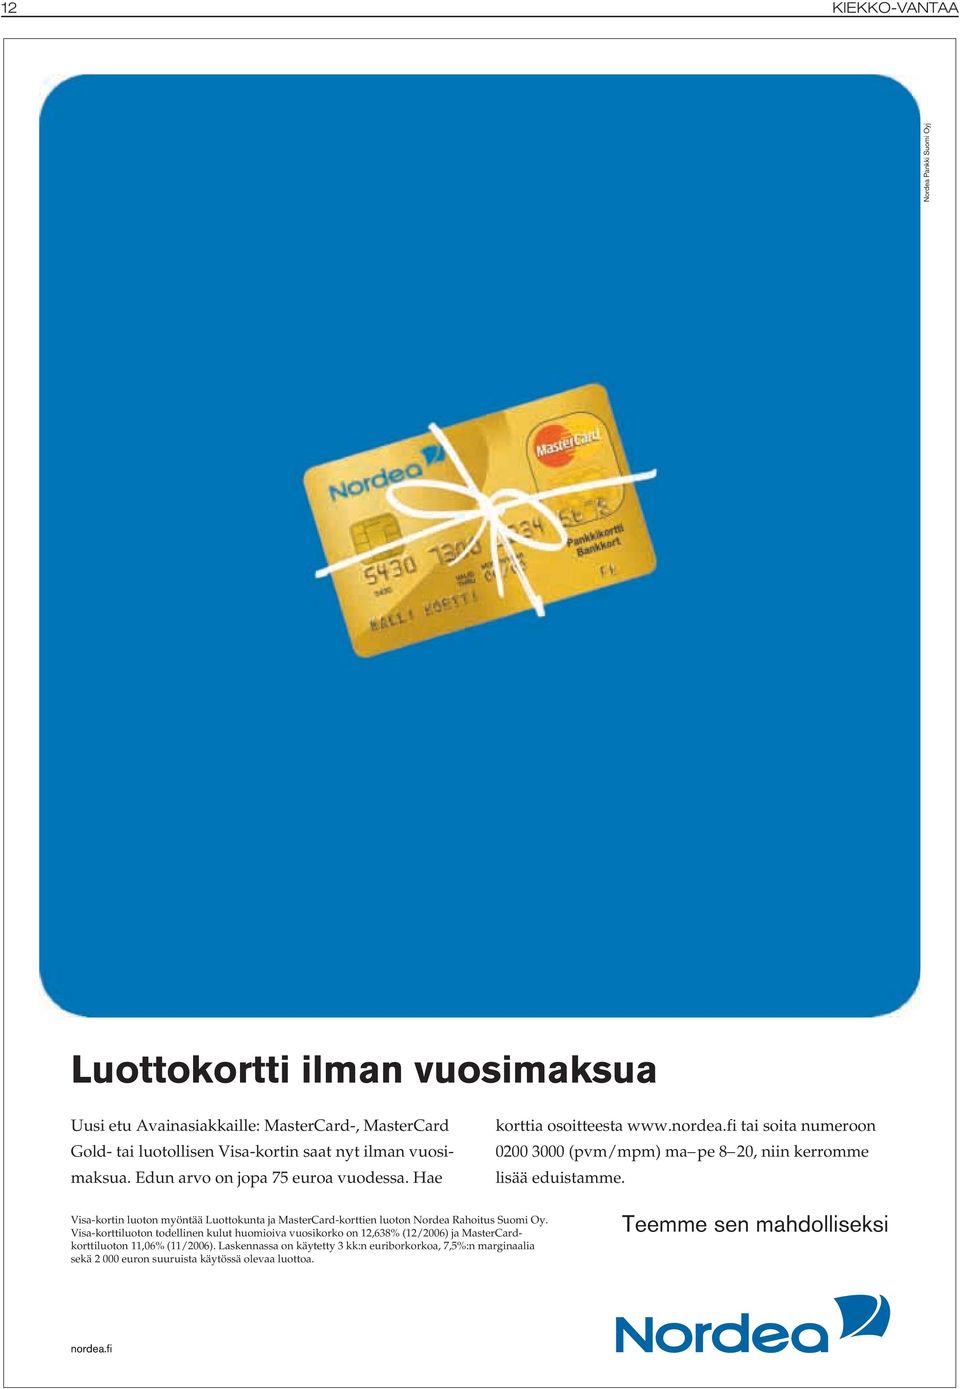 Visa-kortin luoton myöntää Luottokunta ja MasterCard-korttien luoton Nordea Rahoitus Suomi Oy.